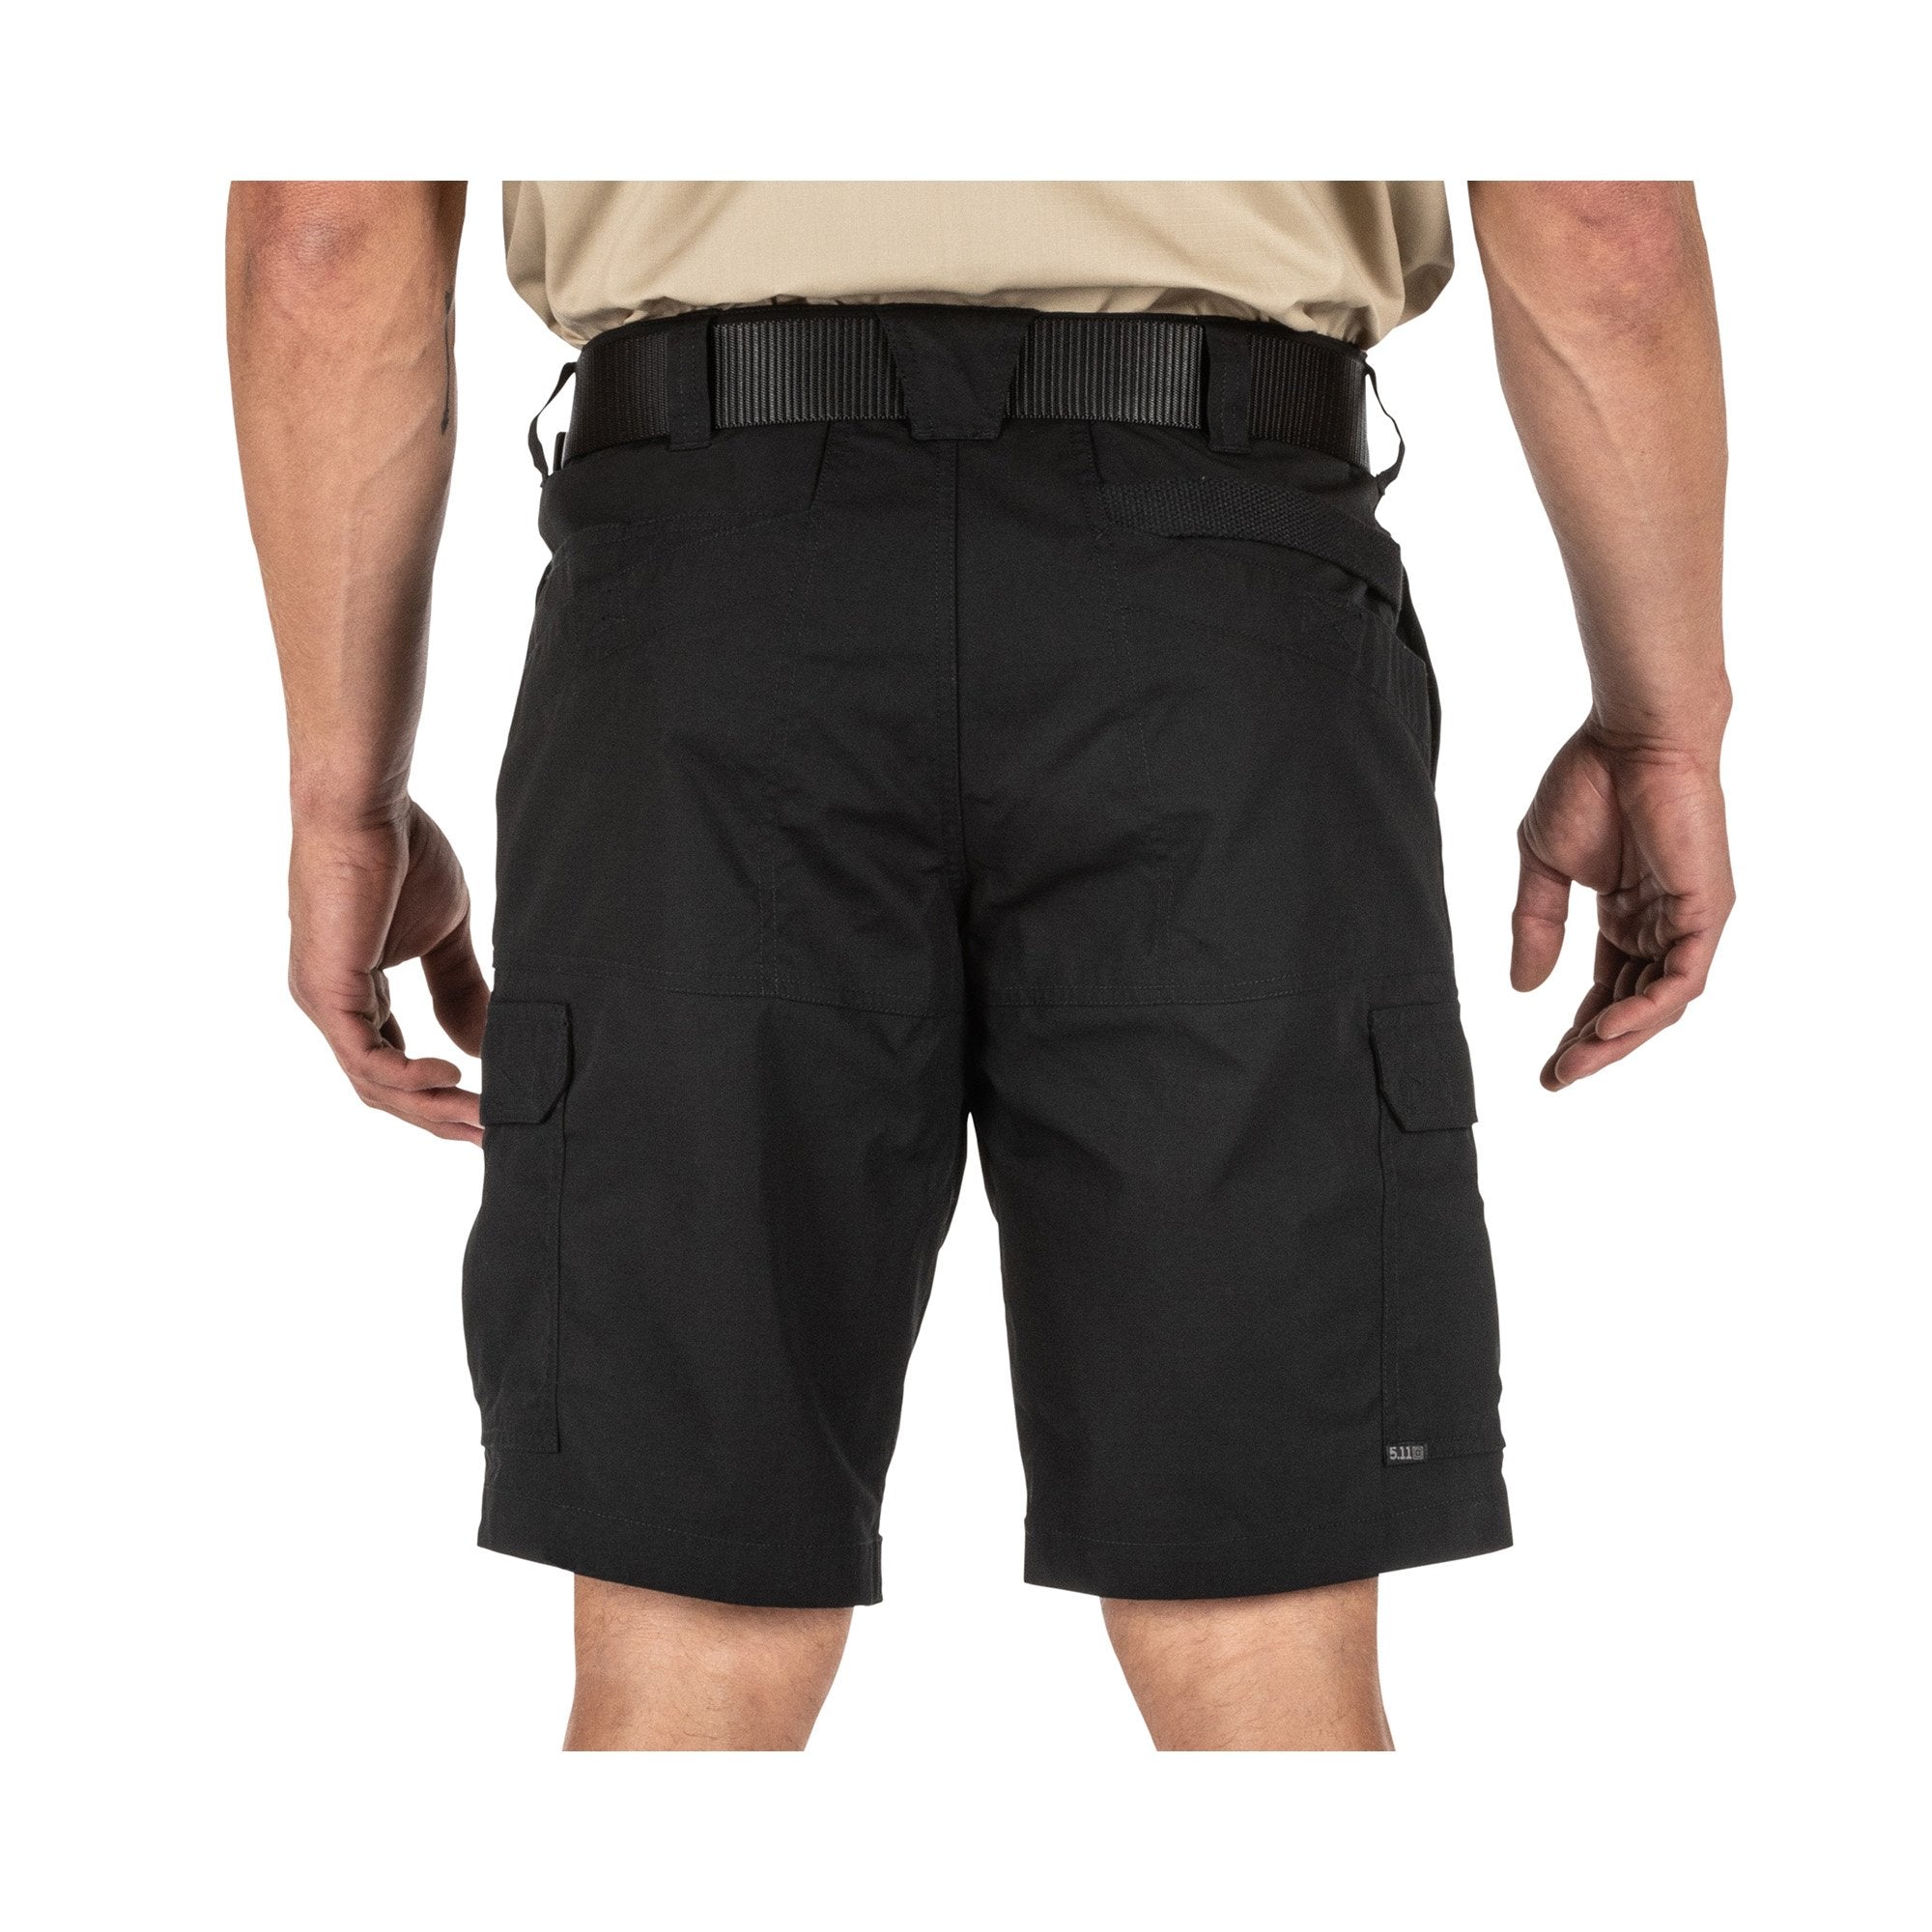 5.11 Tactical ABR Pro 11" Shorts Black Shorts 5.11 Tactical 28" Tactical Gear Supplier Tactical Distributors Australia